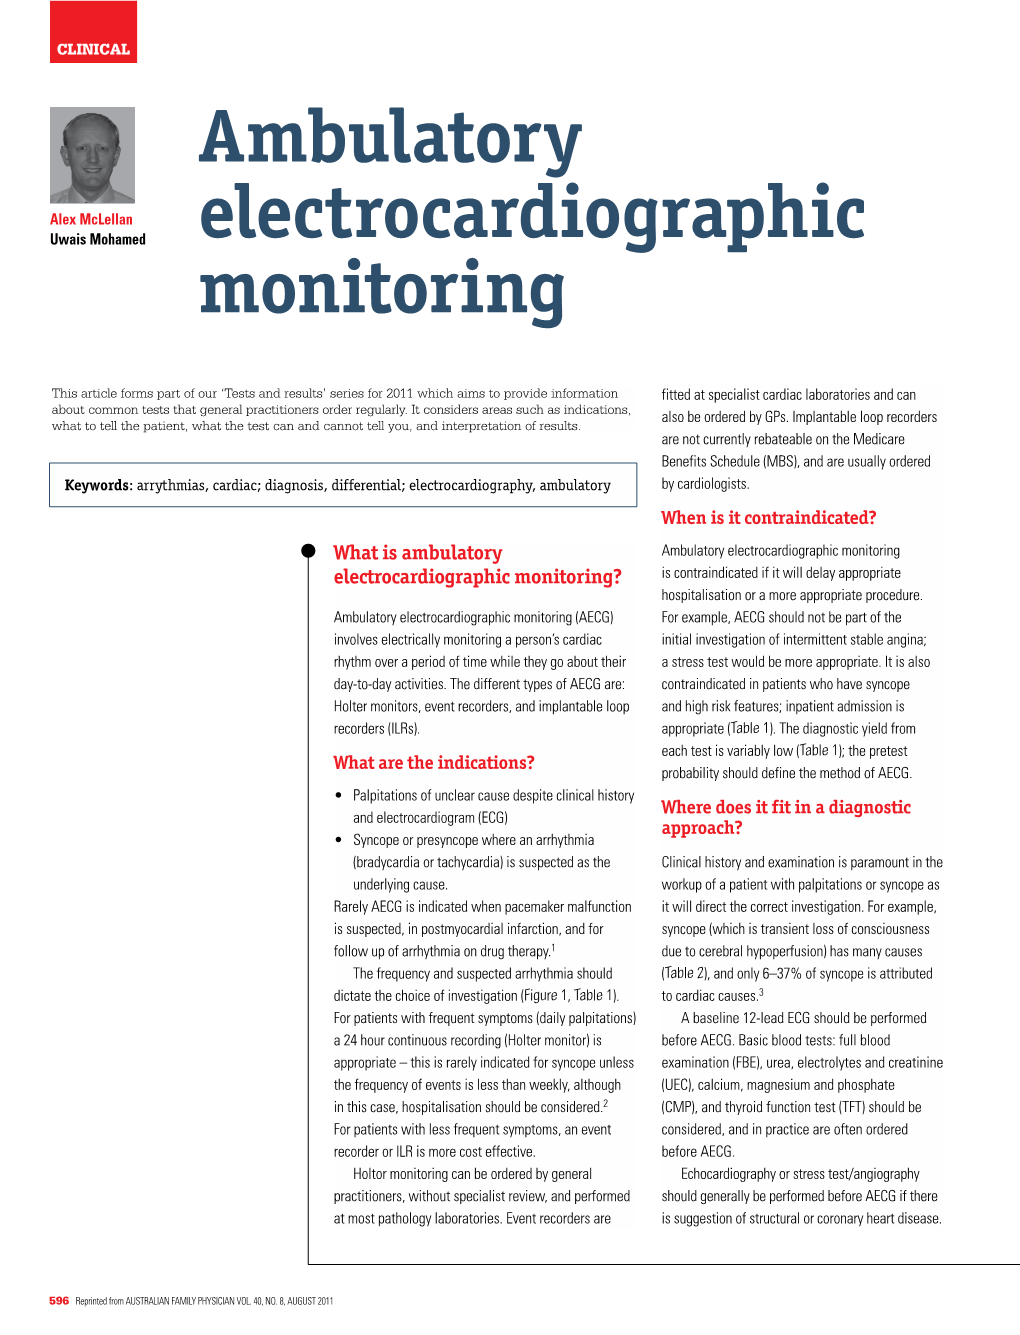 Ambulatory Electrocardiographic Monitoring